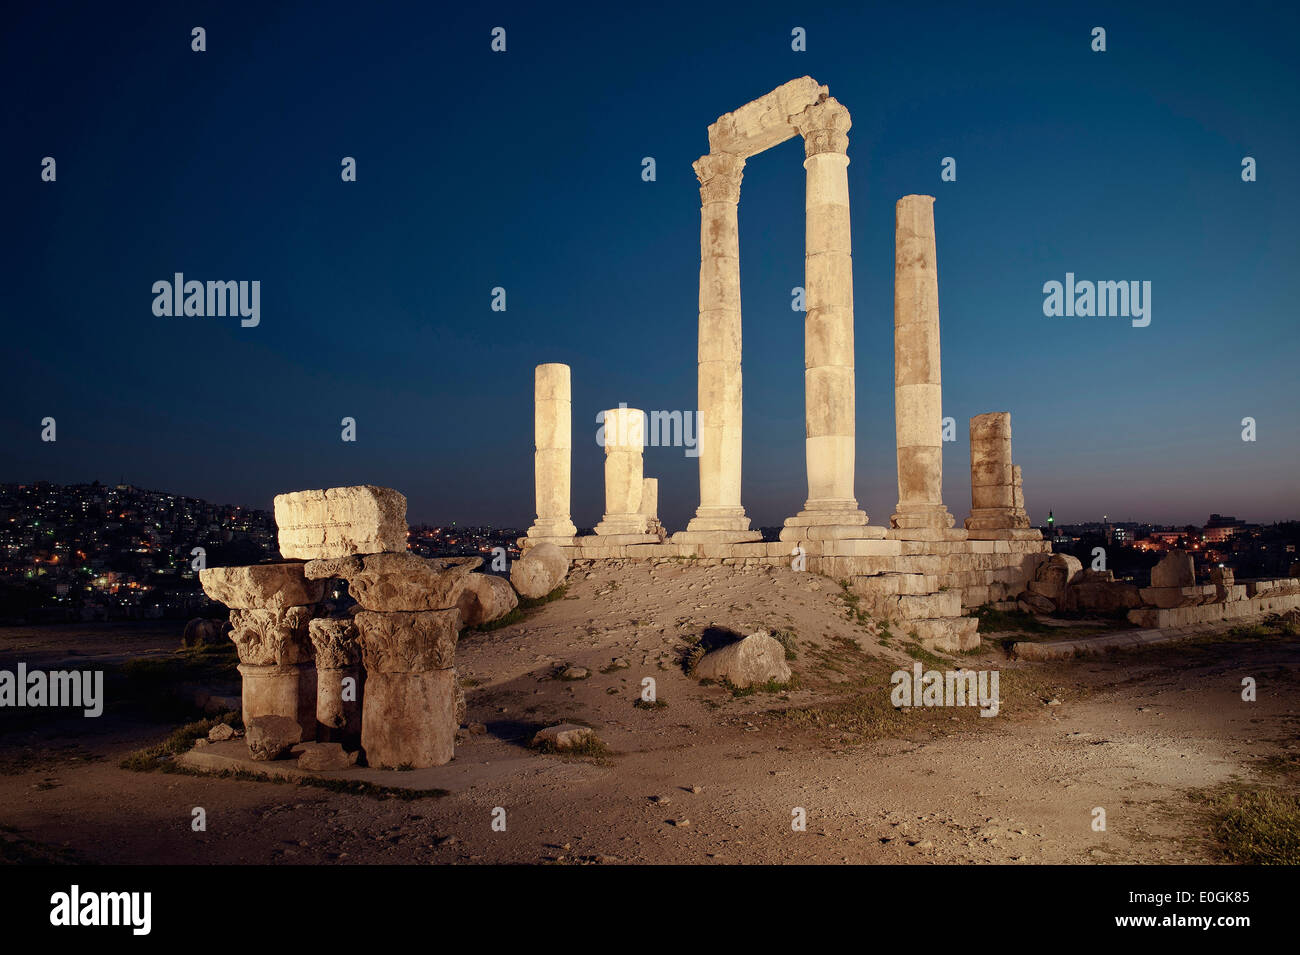 Ruins of roman hercules temple at night, Amman, Jordan, Middle East, Asia Stock Photo